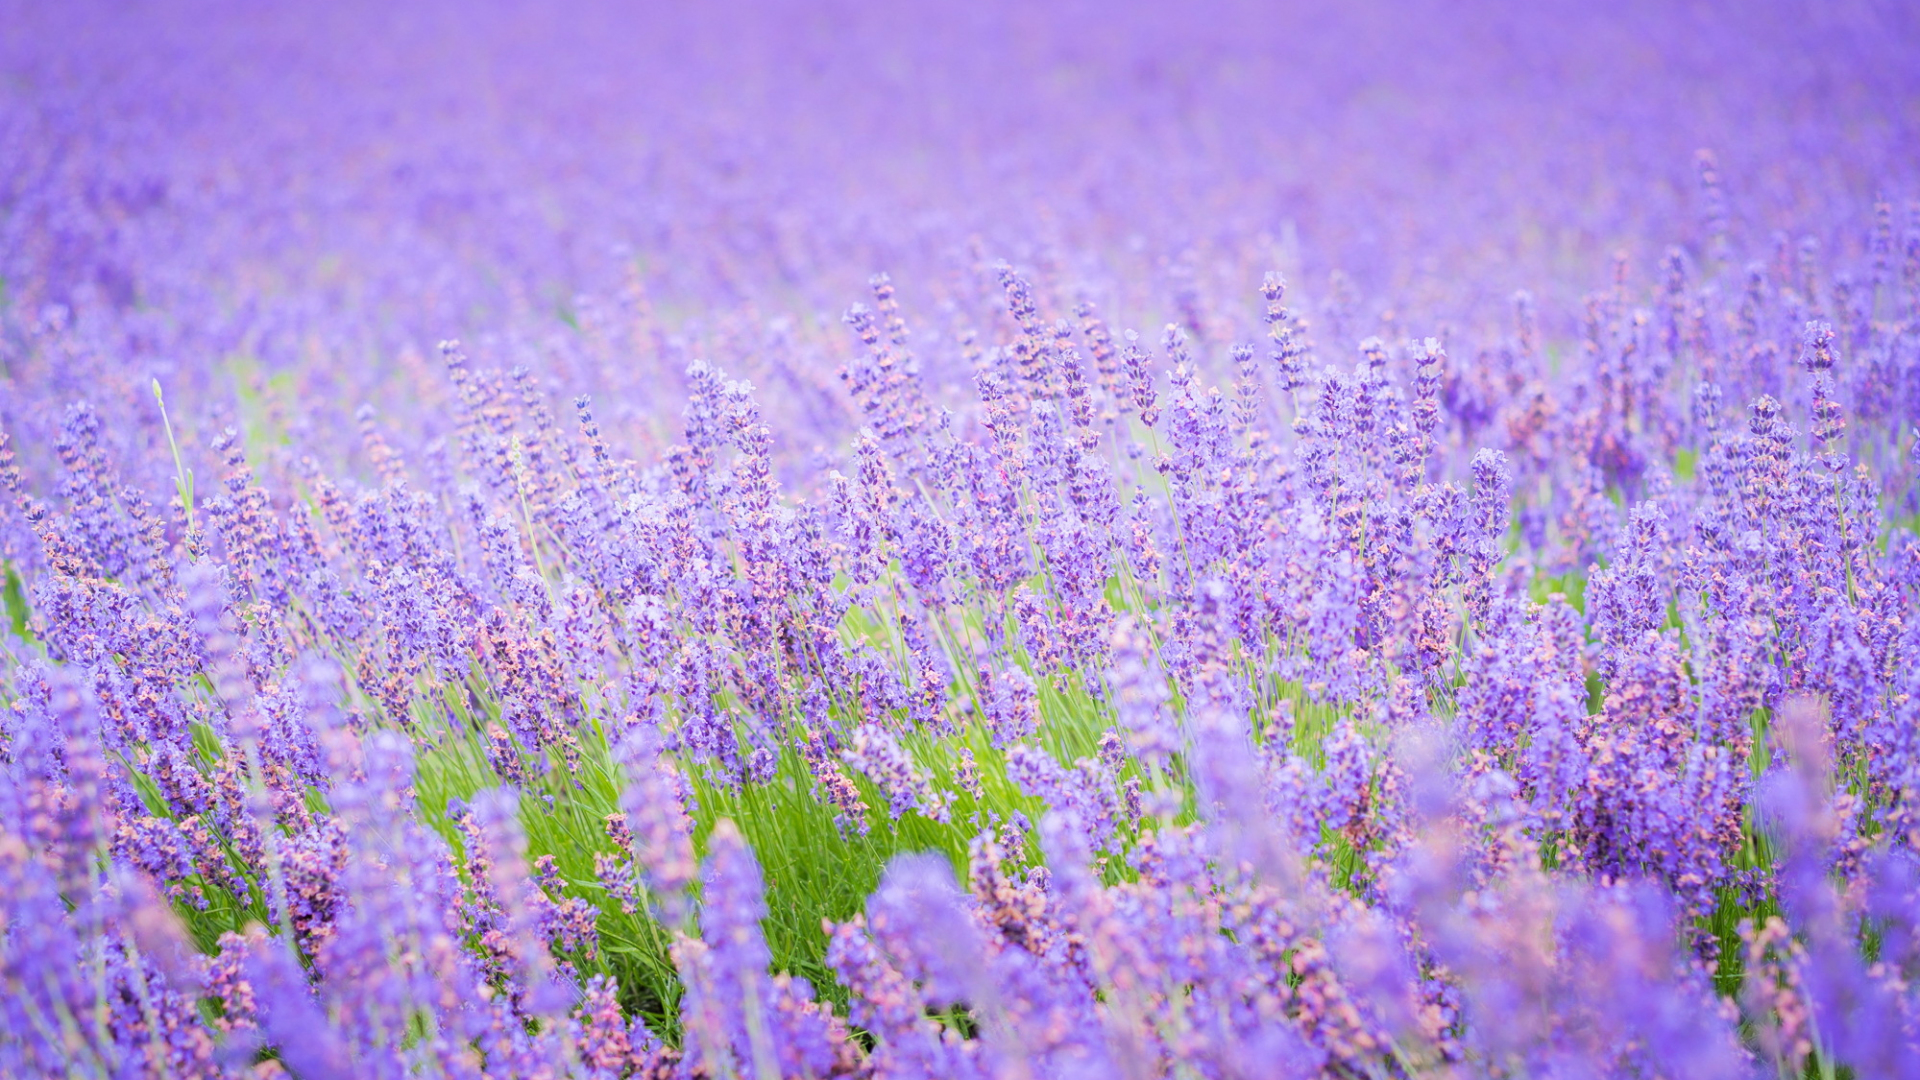 Download 1920x1080 Wallpaper Lavender Flowers Purple Flower Field